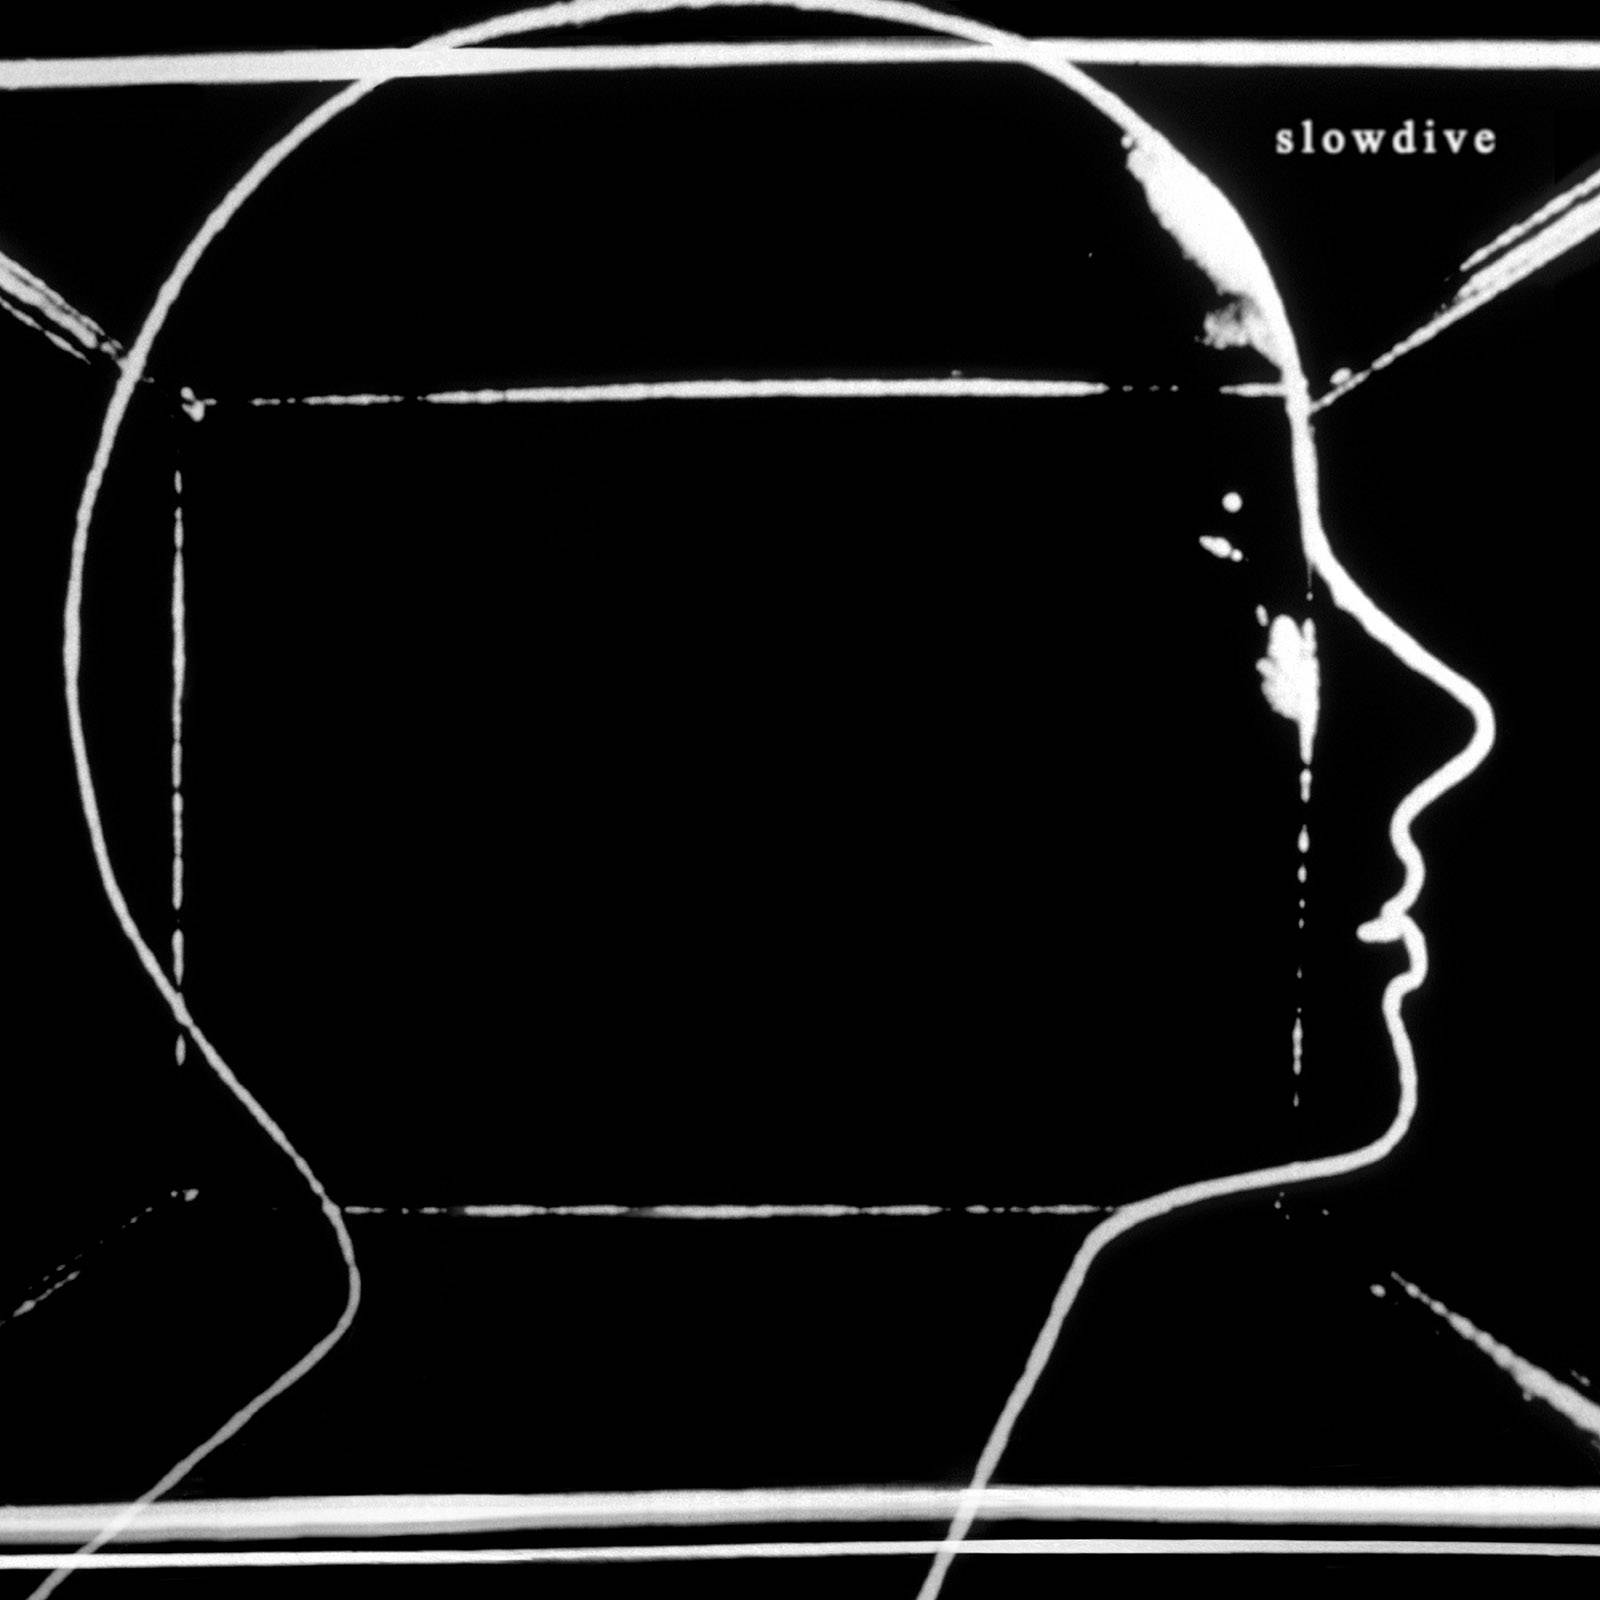 Slowdive – Slowdive (2017) [FLAC 24bit/96kHz]